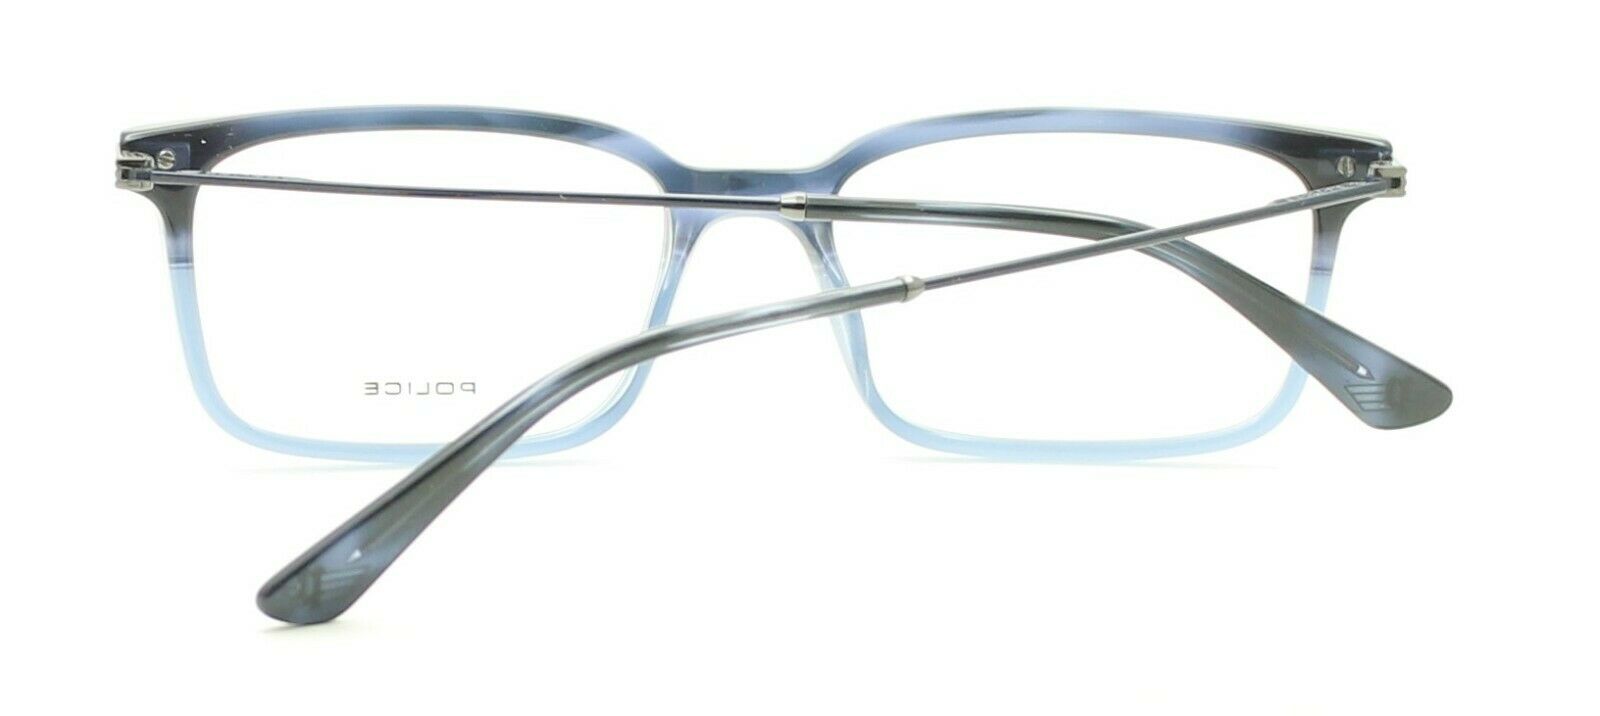 POLICE CLINT 4 VPL 687 COL.09QW 52mm Eyewear FRAMES RX Optical Eyeglasses - New